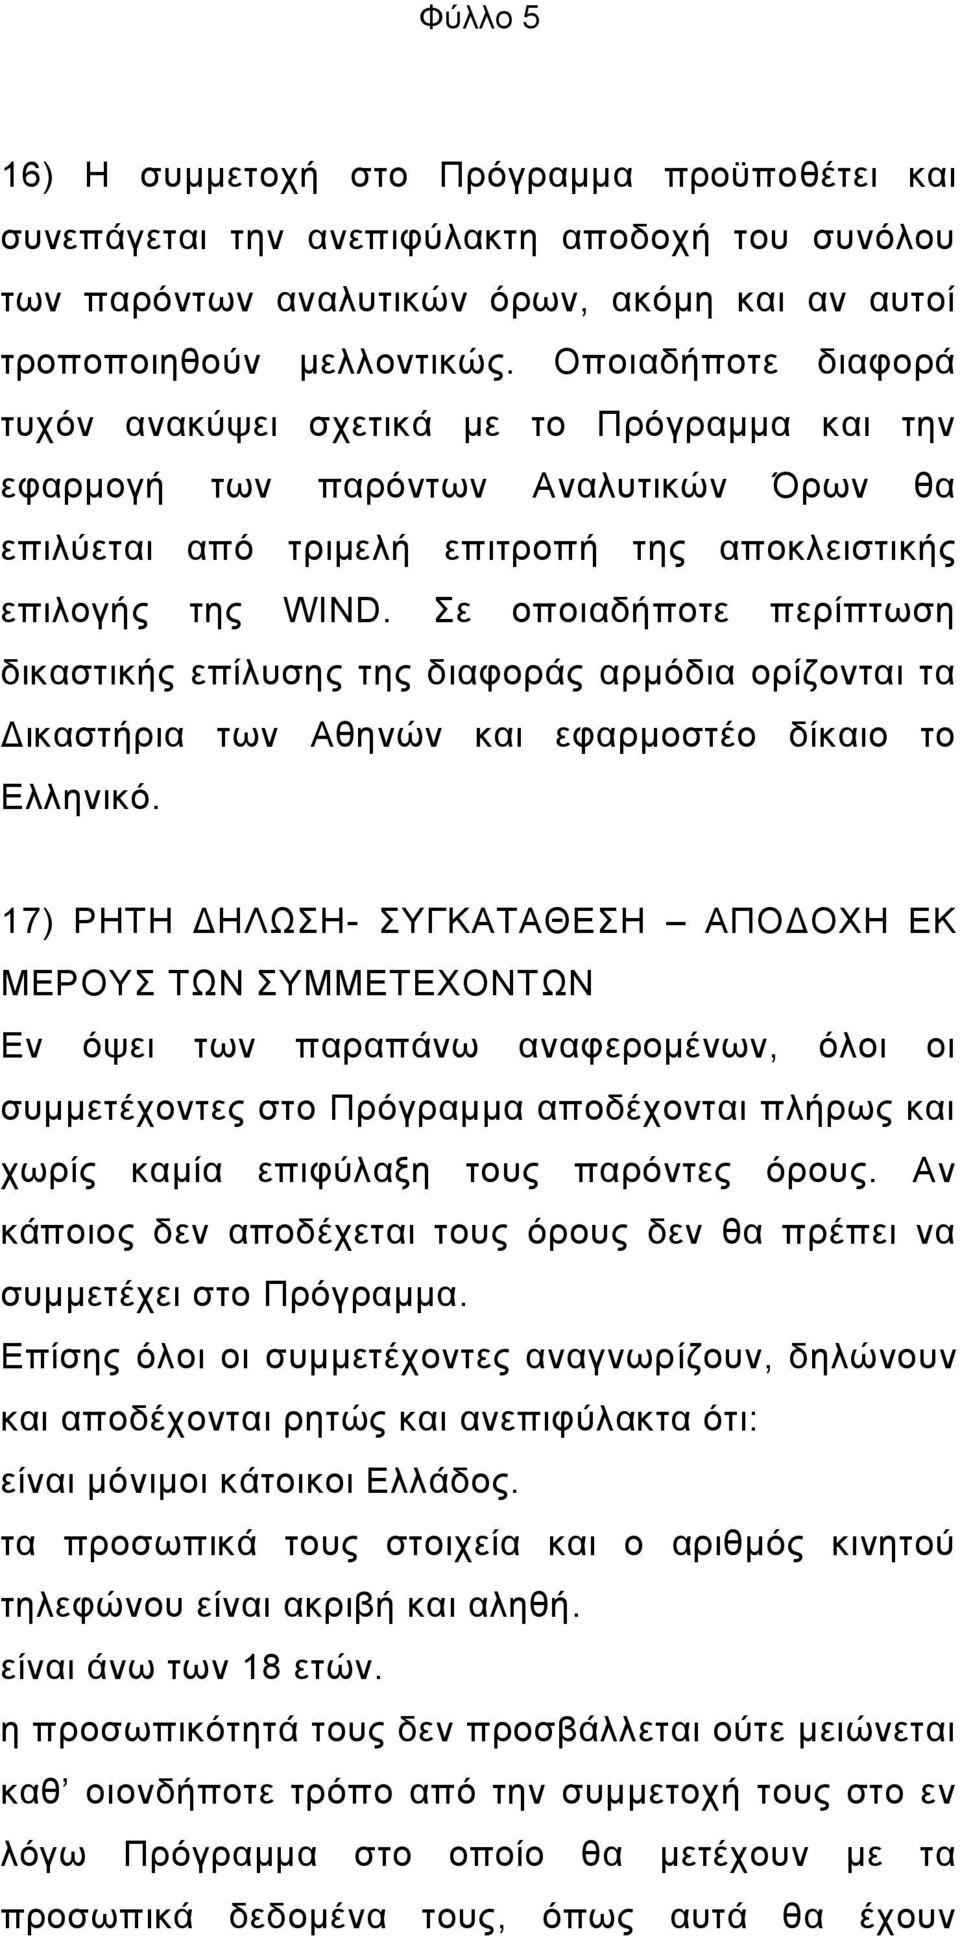 Σε οποιαδήποτε περίπτωση δικαστικής επίλυσης της διαφοράς αρμόδια ορίζονται τα Δικαστήρια των Αθηνών και εφαρμοστέο δίκαιο το Ελληνικό.